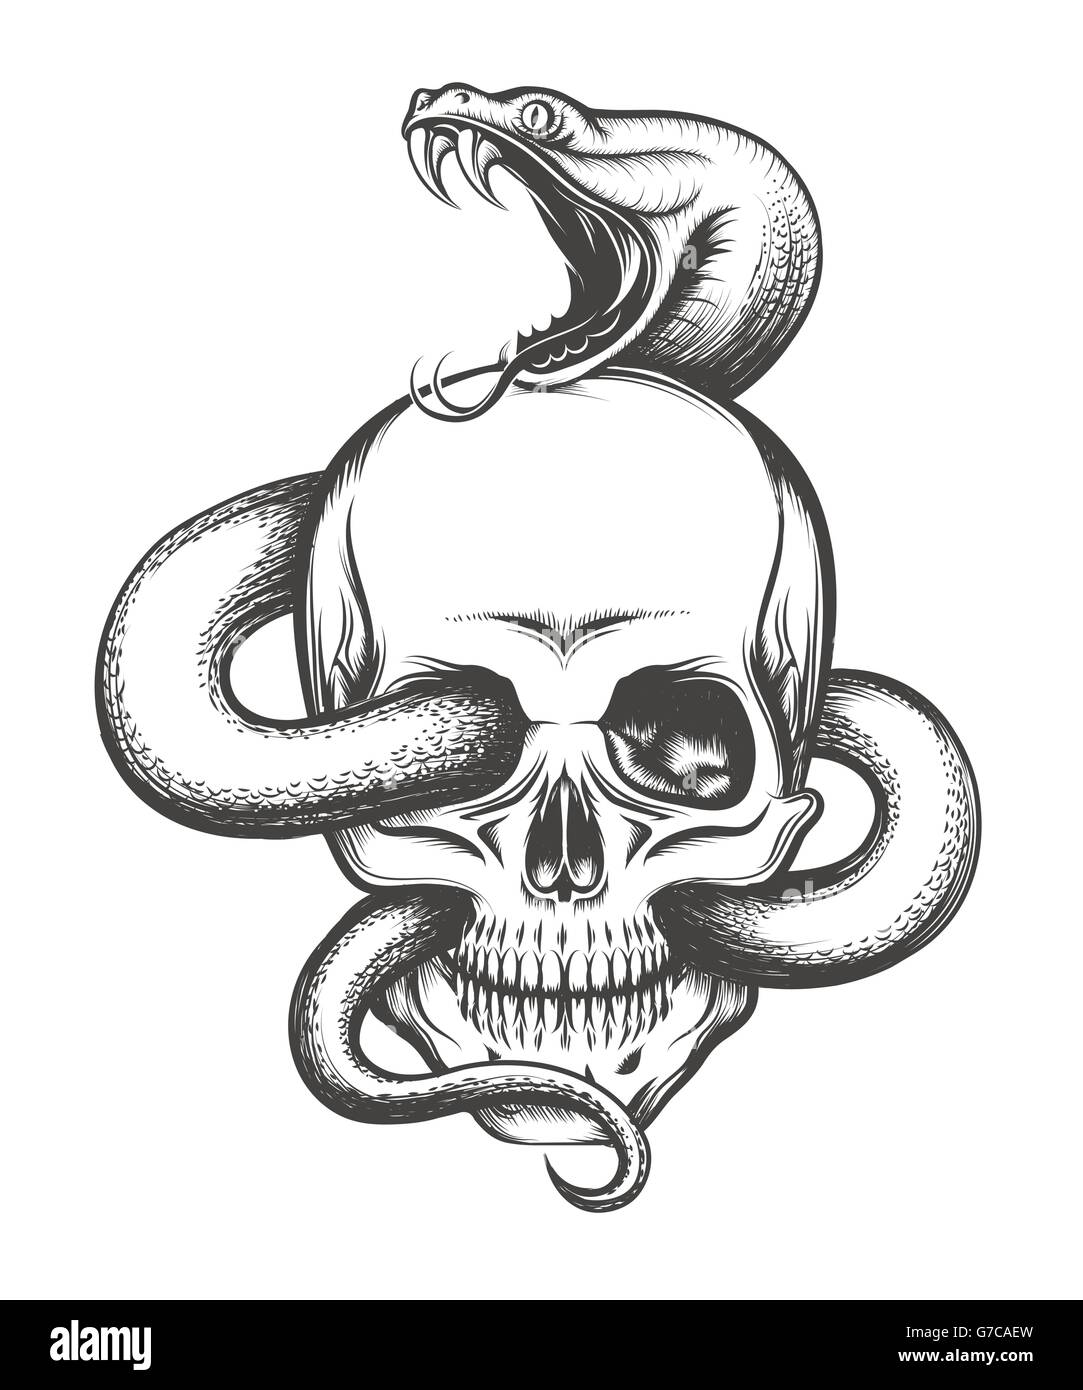 Crâne humain avec serpent rampant. Illustration en gravure. Illustration de Vecteur